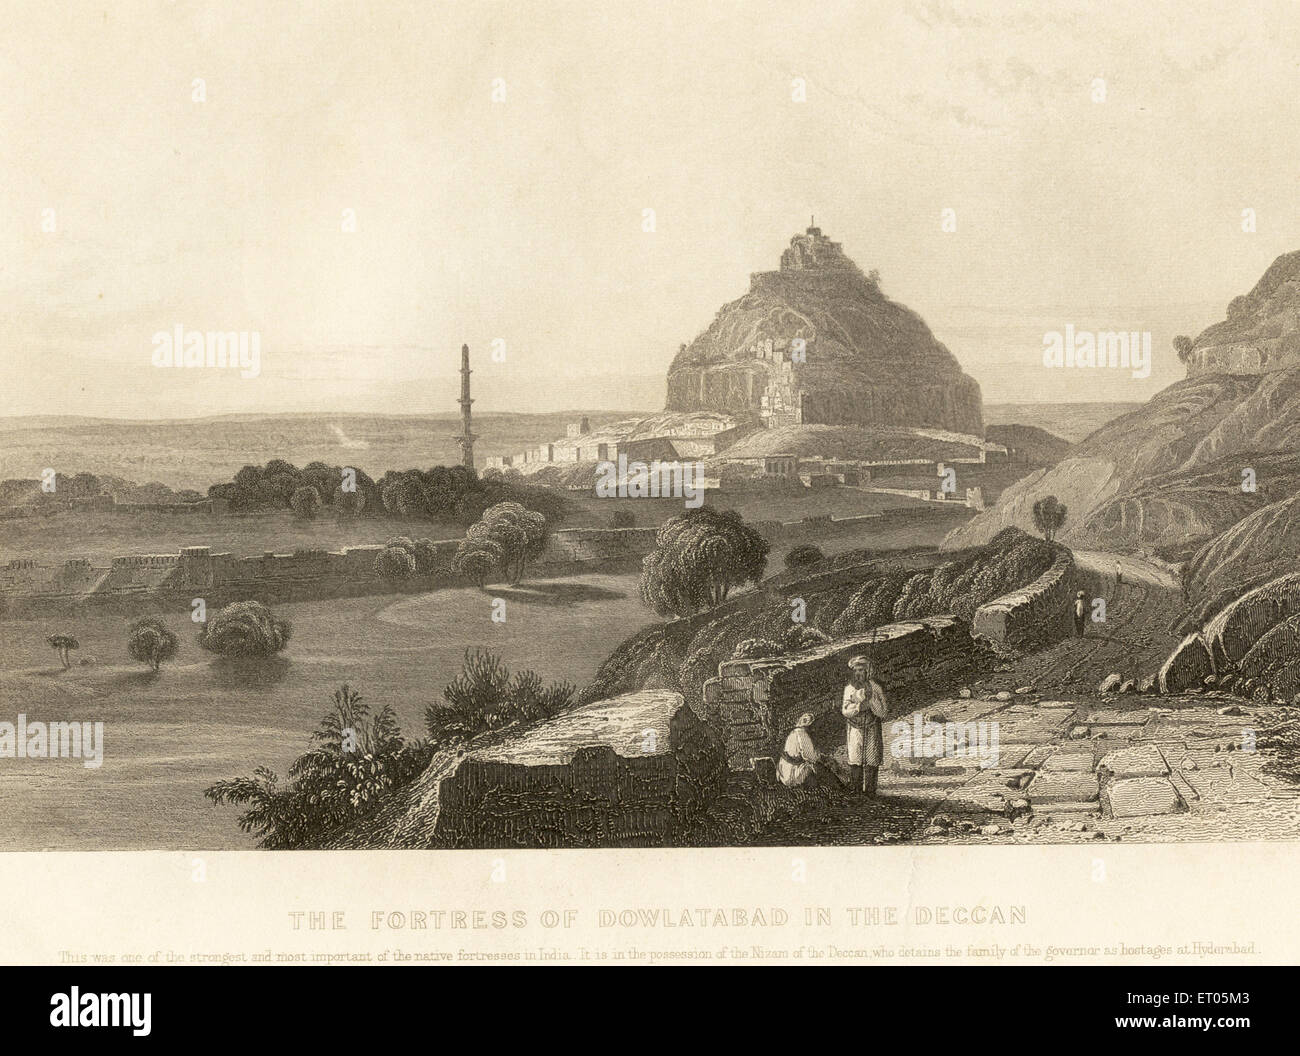 Fort de Daulatabad dans le Deccan en possession du Nizam de Hyderabad ; Maharashtra ; Inde ; ancienne image de 1800s Banque D'Images